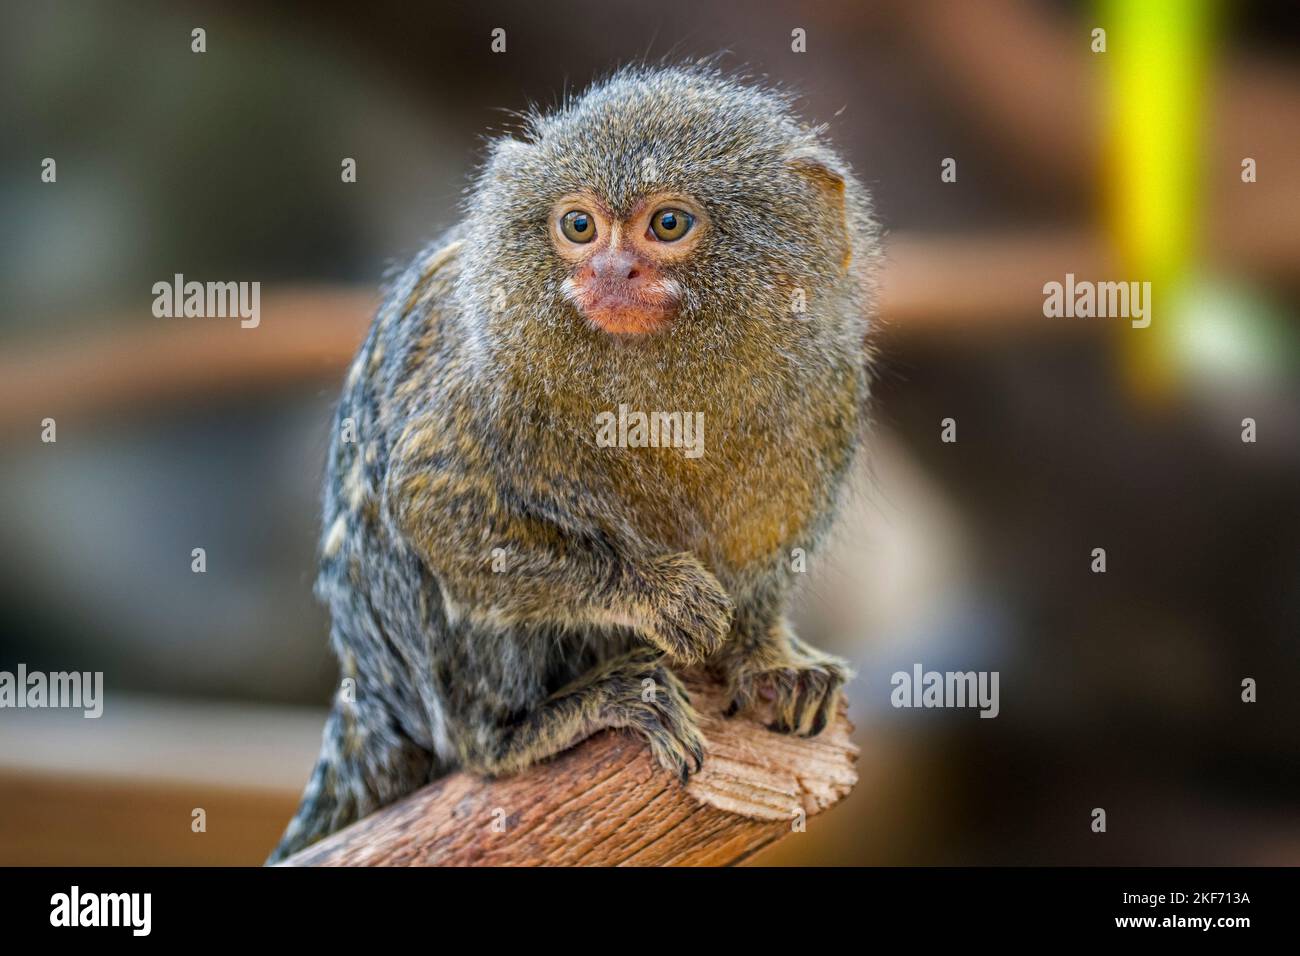 Gefangener Pygmäenmurmeltier (Cebuella pygmaea), kleinster Primat der Welt, auch Fingeraffen genannt, oft in exotischen Tierhandwerken zu finden Stockfoto